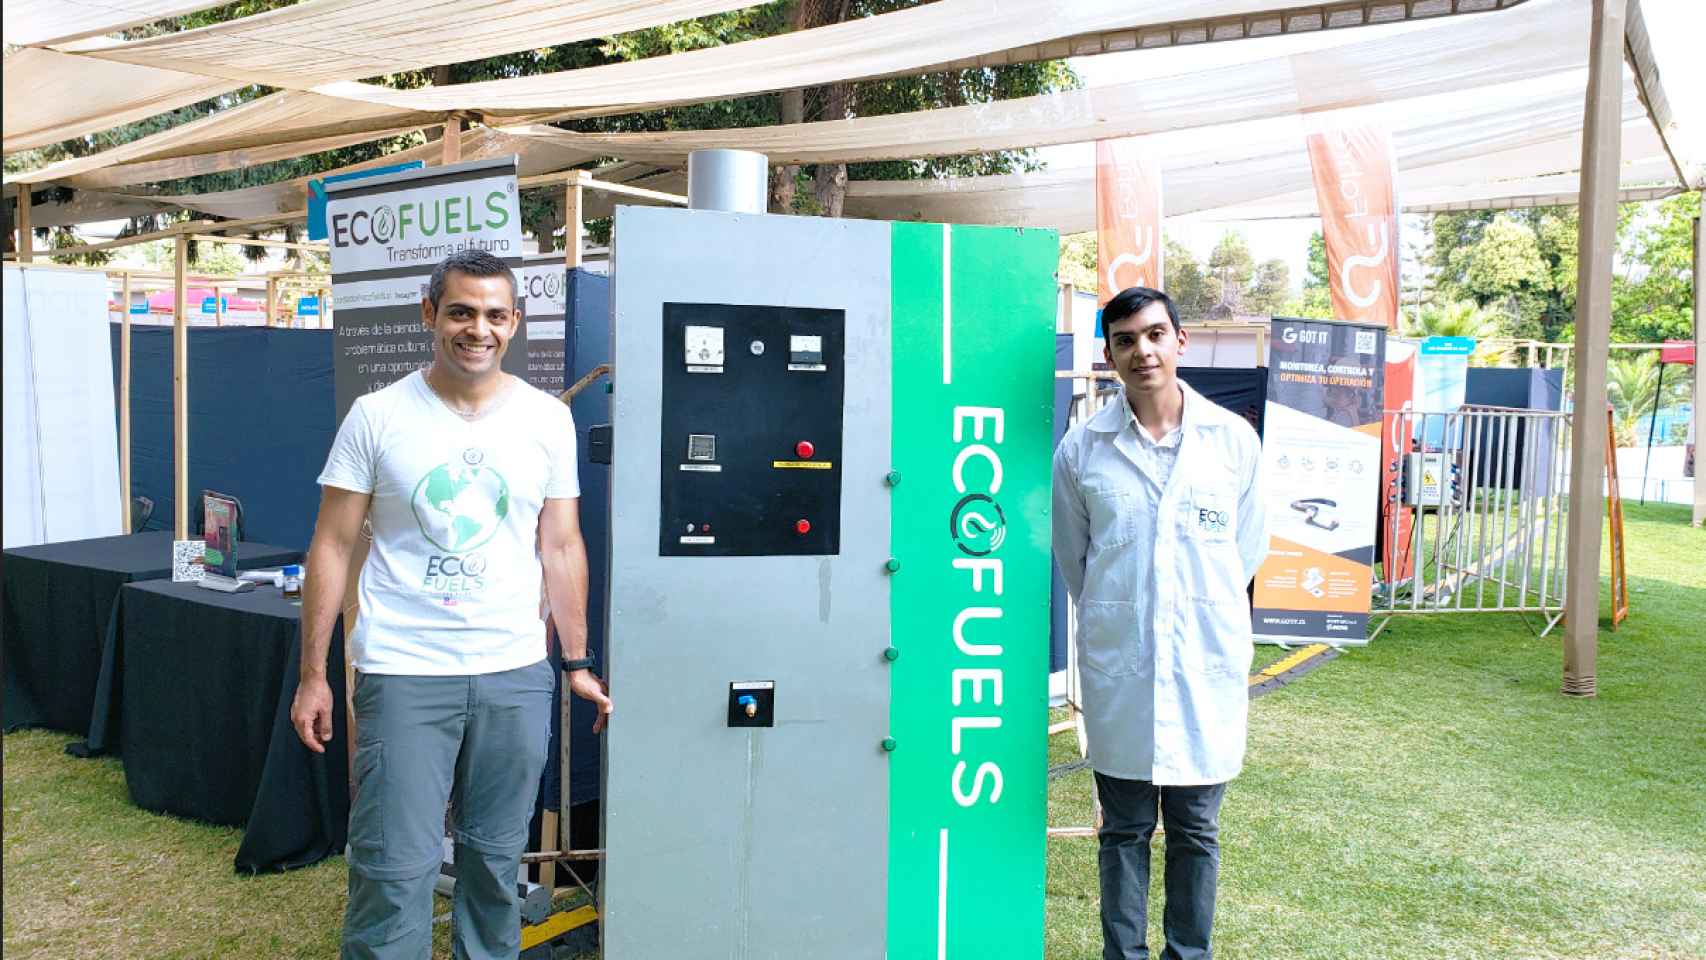 Uno de los objetivos de la chilena Ecofuels es instalar un punto de reciclaje de plástico en cada municipio.